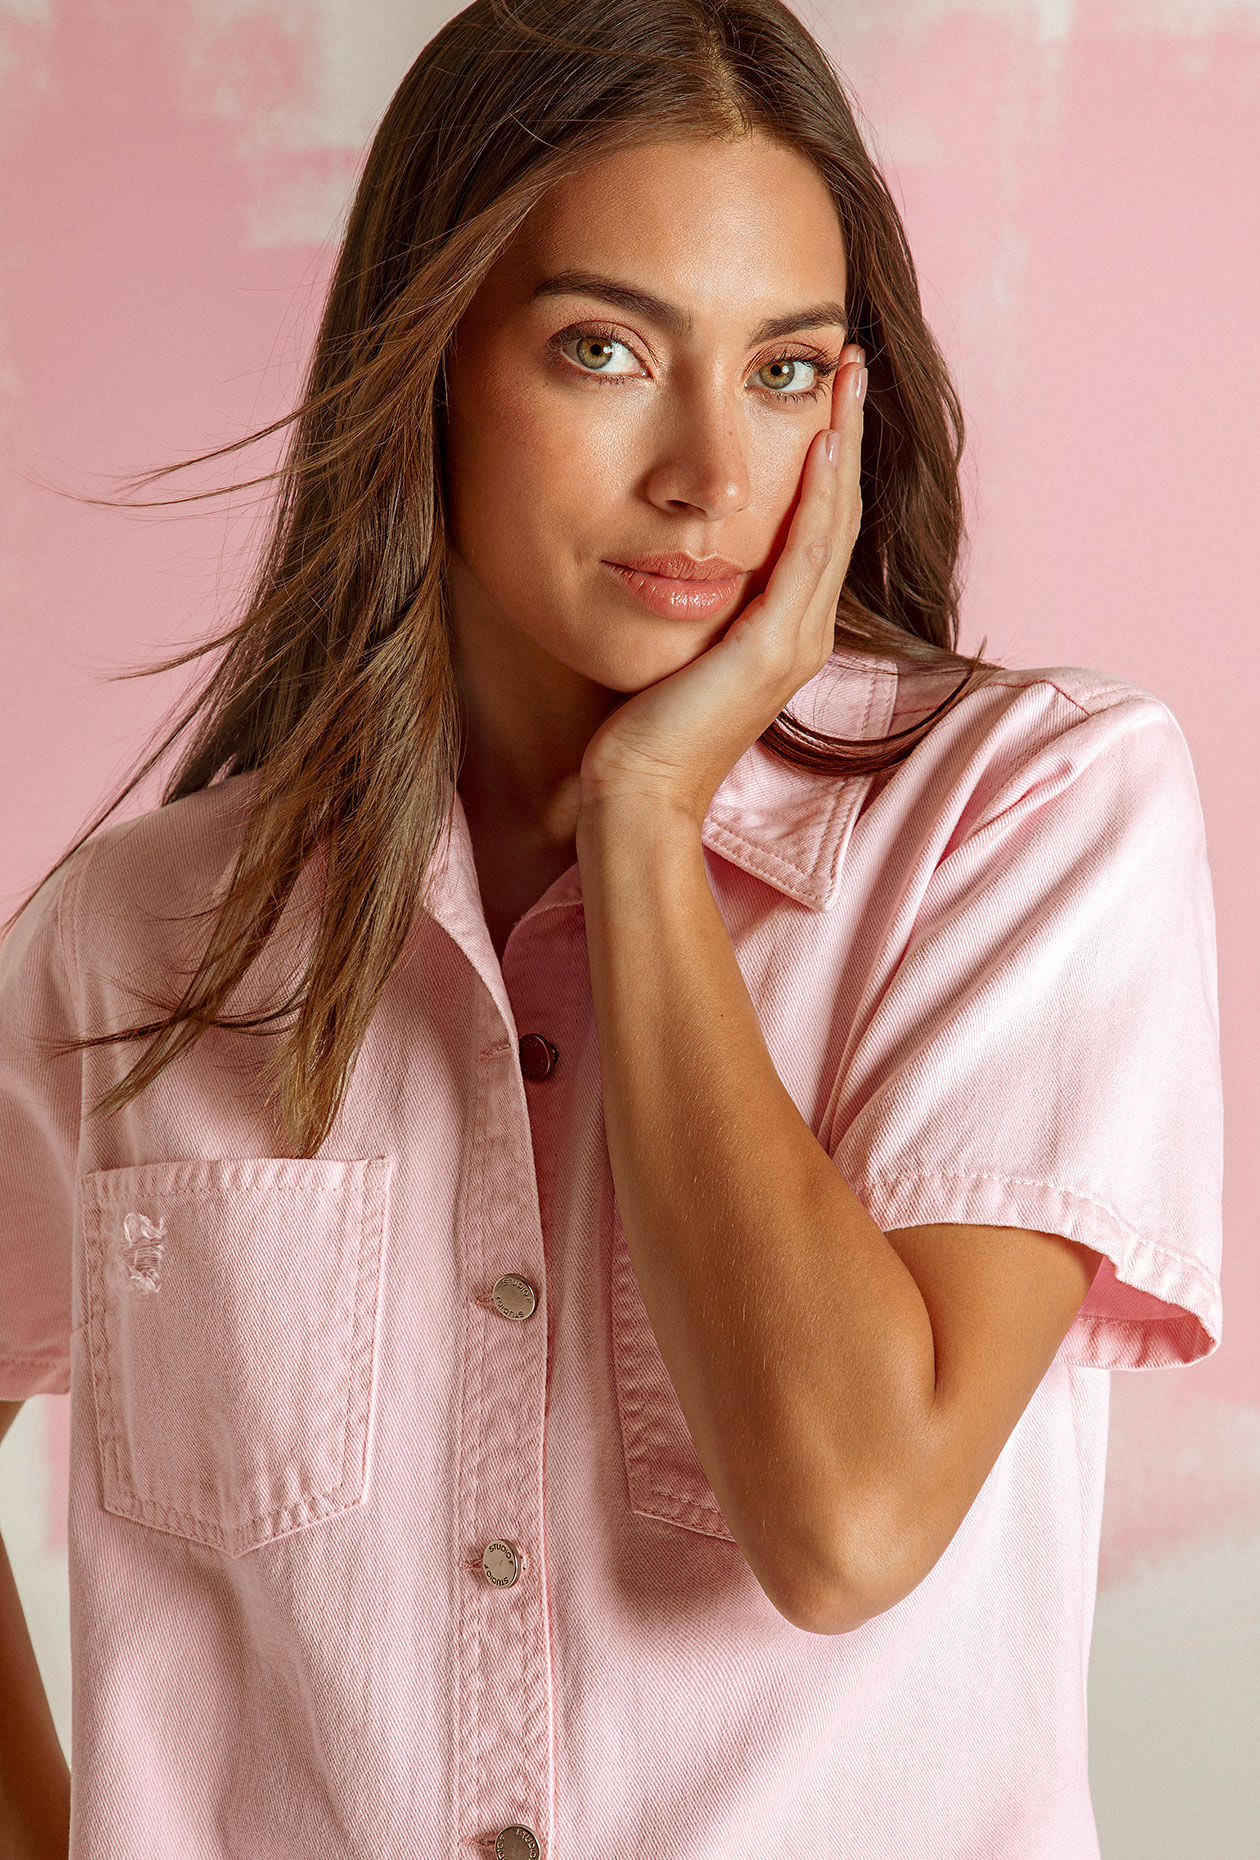 Foto de Laura Archbold usando blusa rosa con manga corta, botones plateados y bolsillos frontales